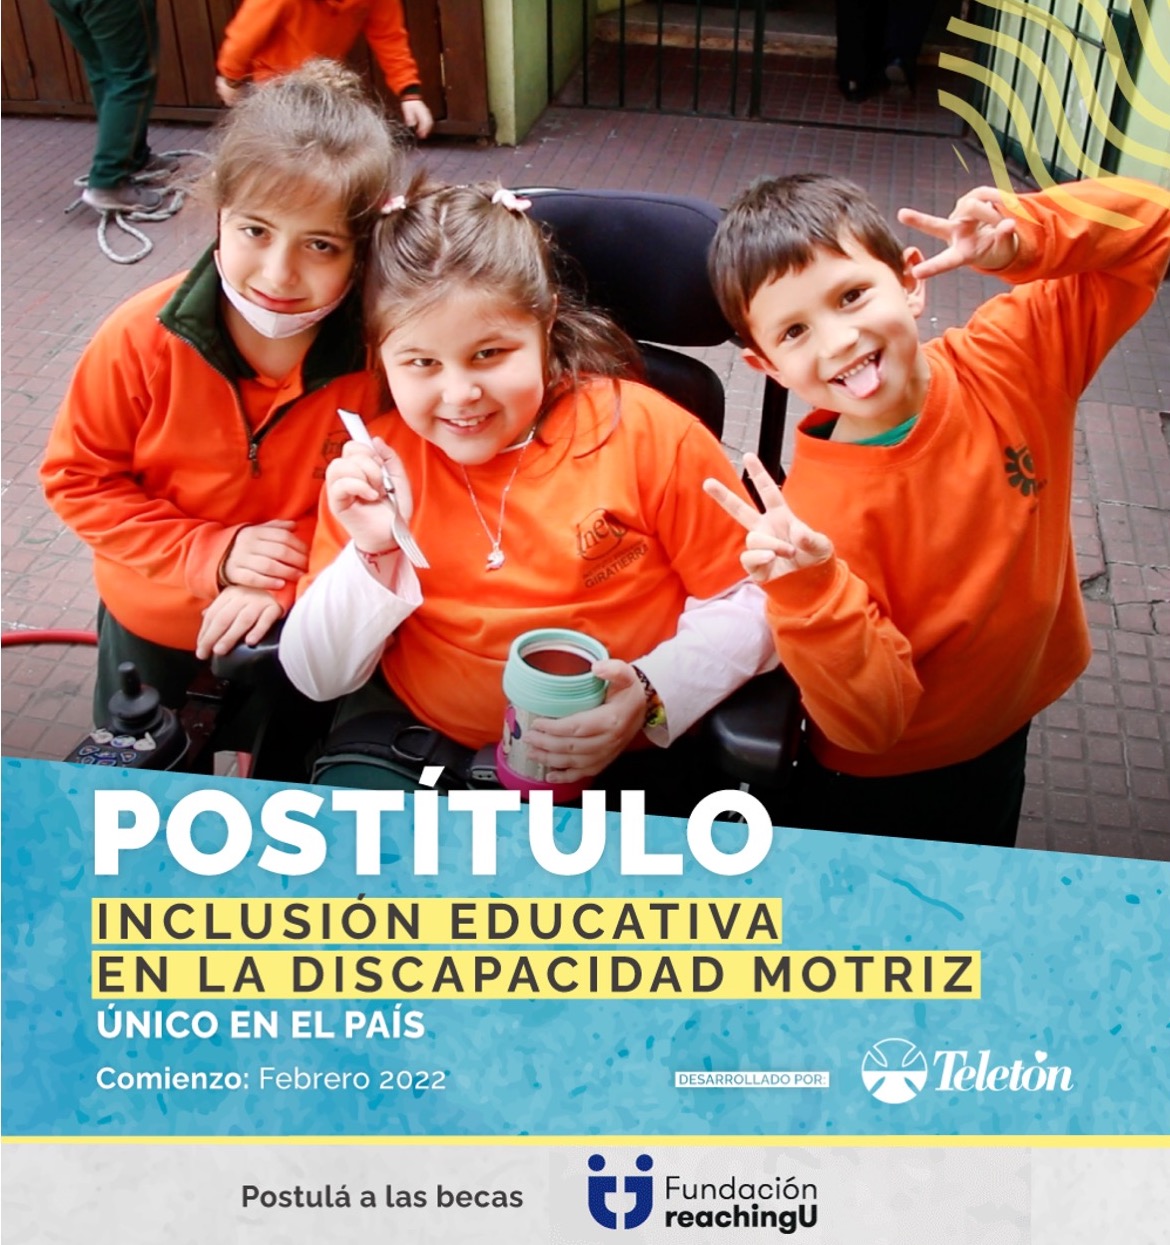 Postítulo Inclusión educativa en la discapacidad motriz. Posteo para beca total